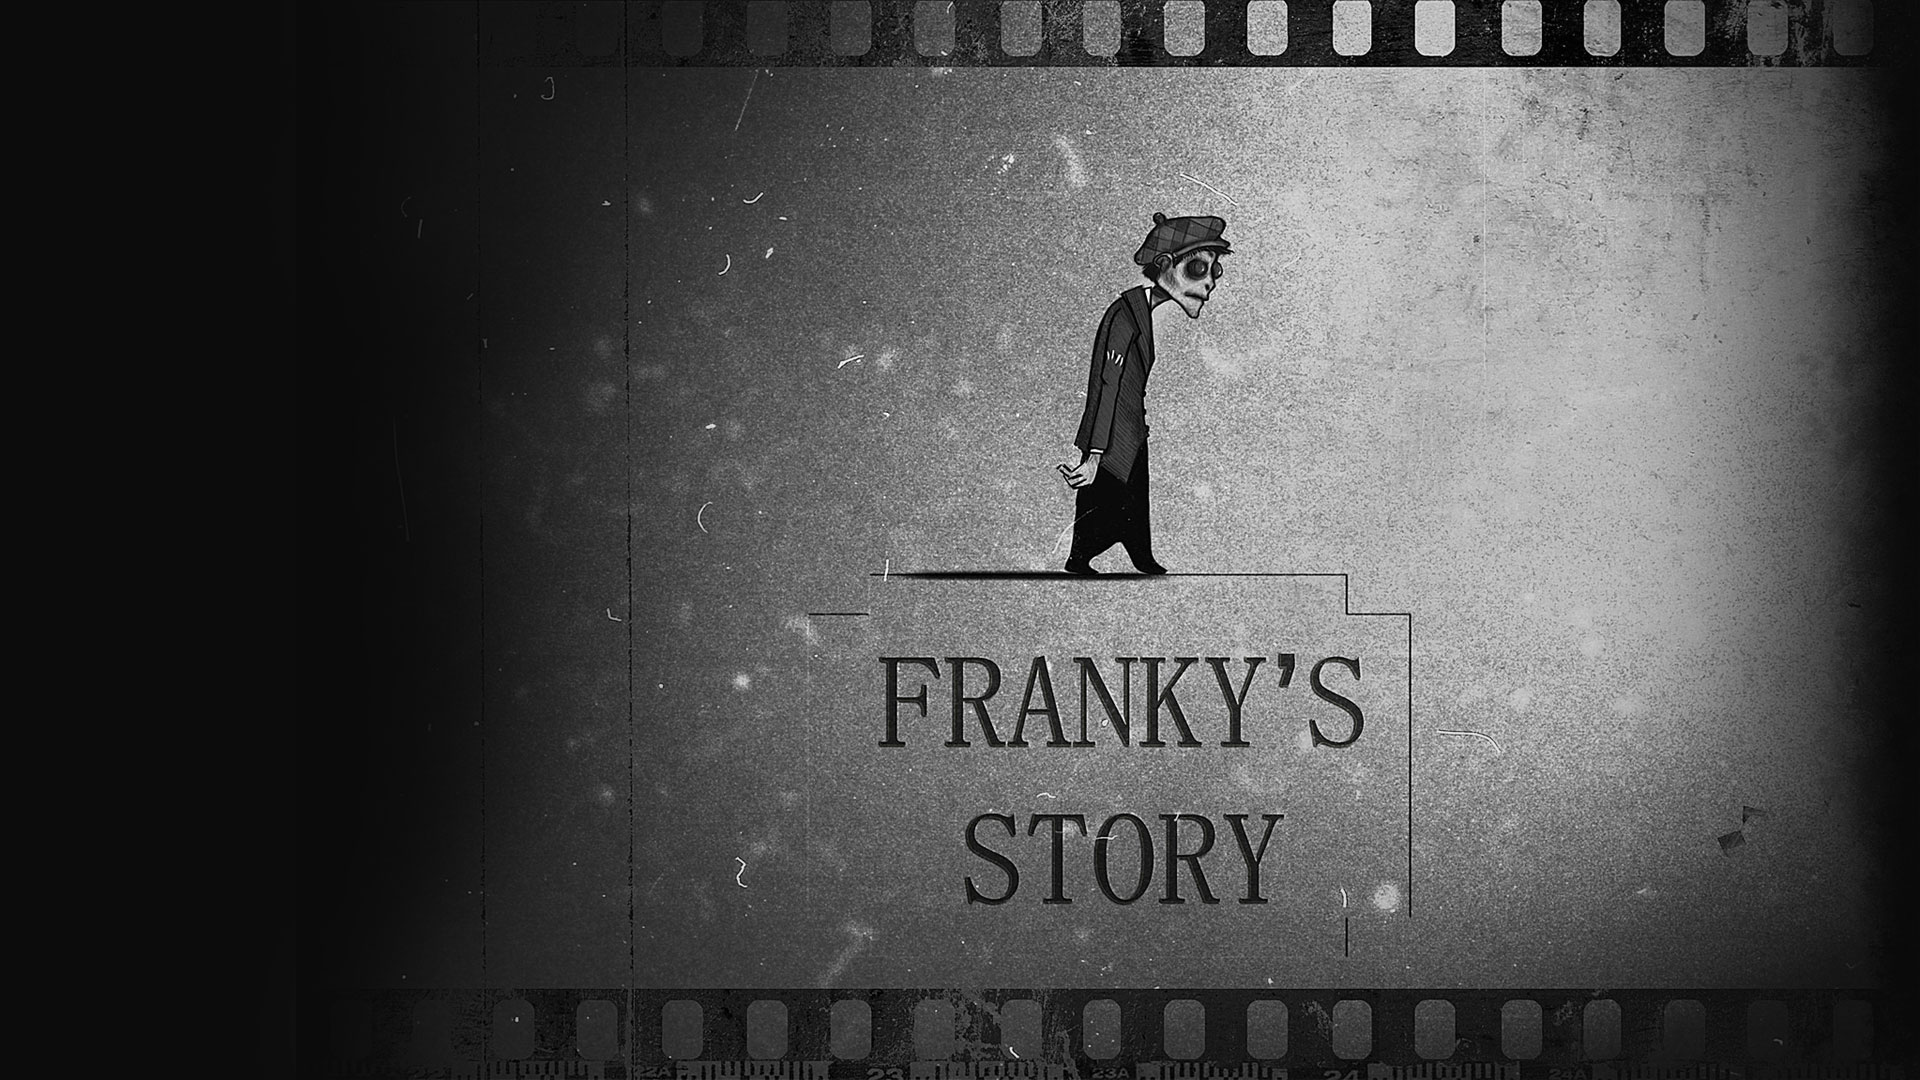 Franky's Story